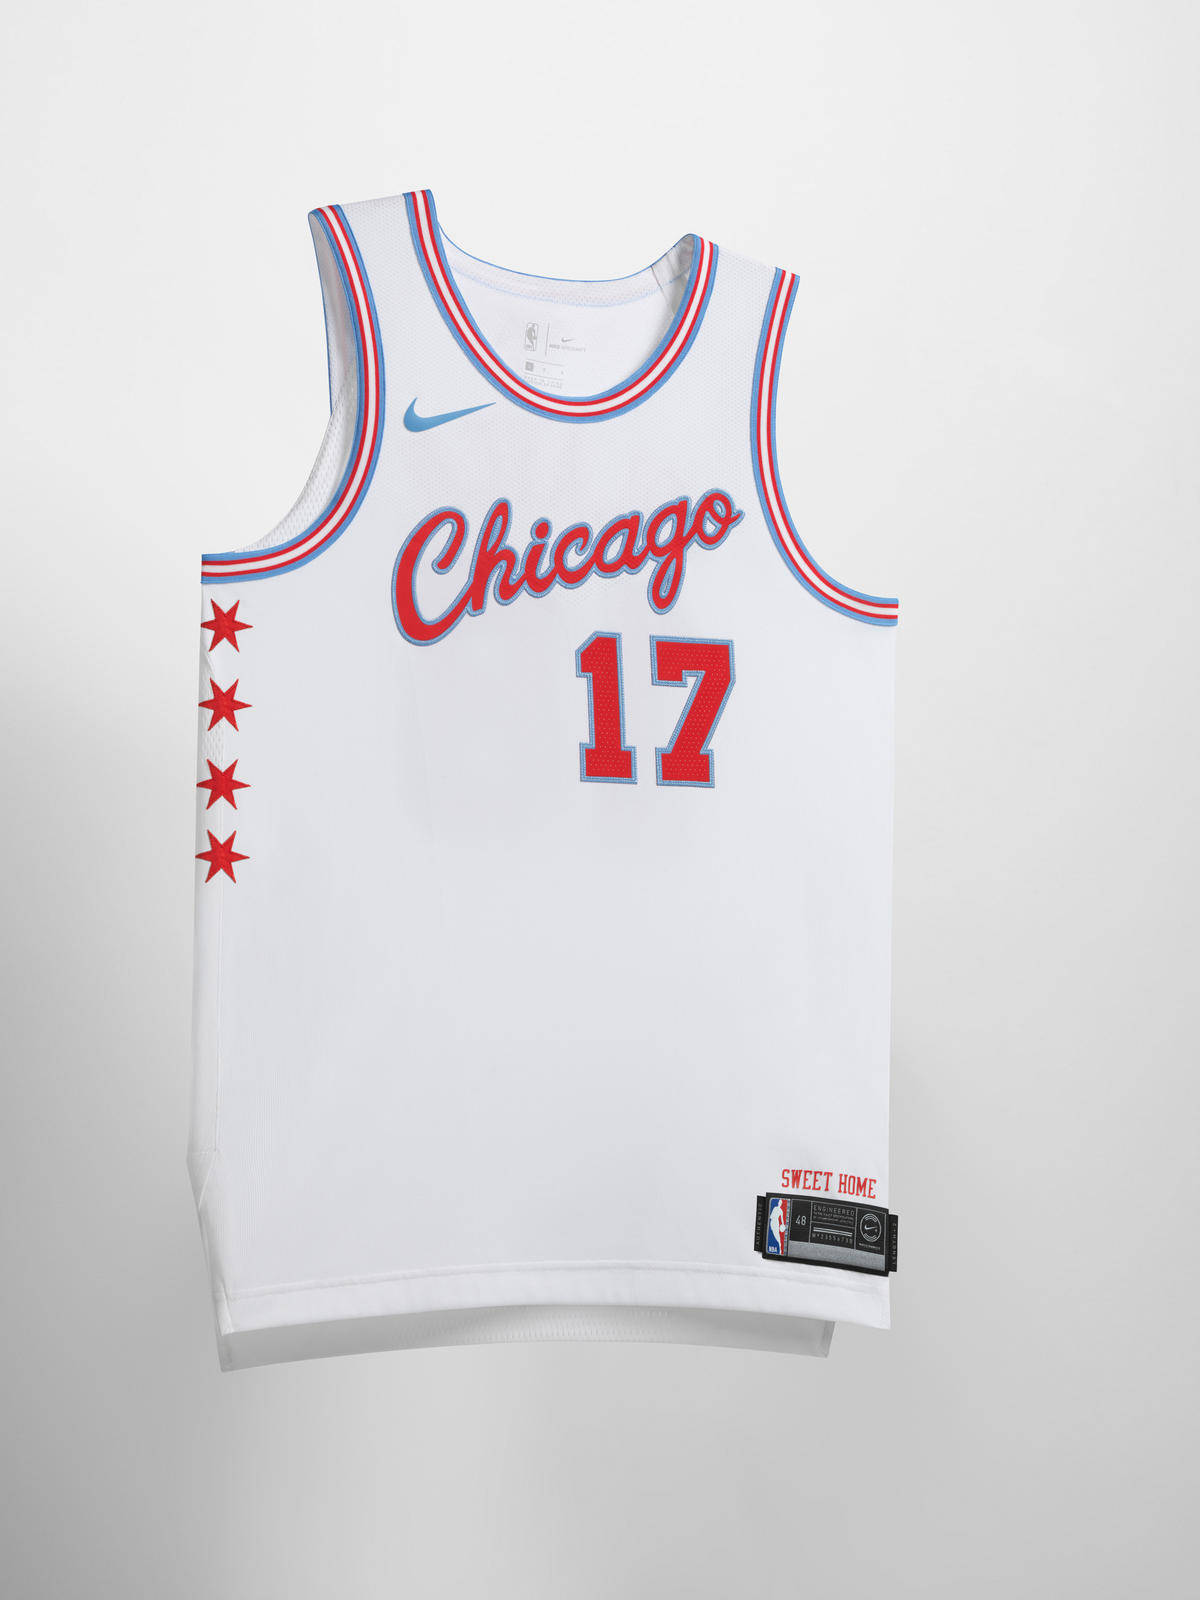 كارو وايت new chicago bulls jersey 2017,www.mautova.com كارو وايت